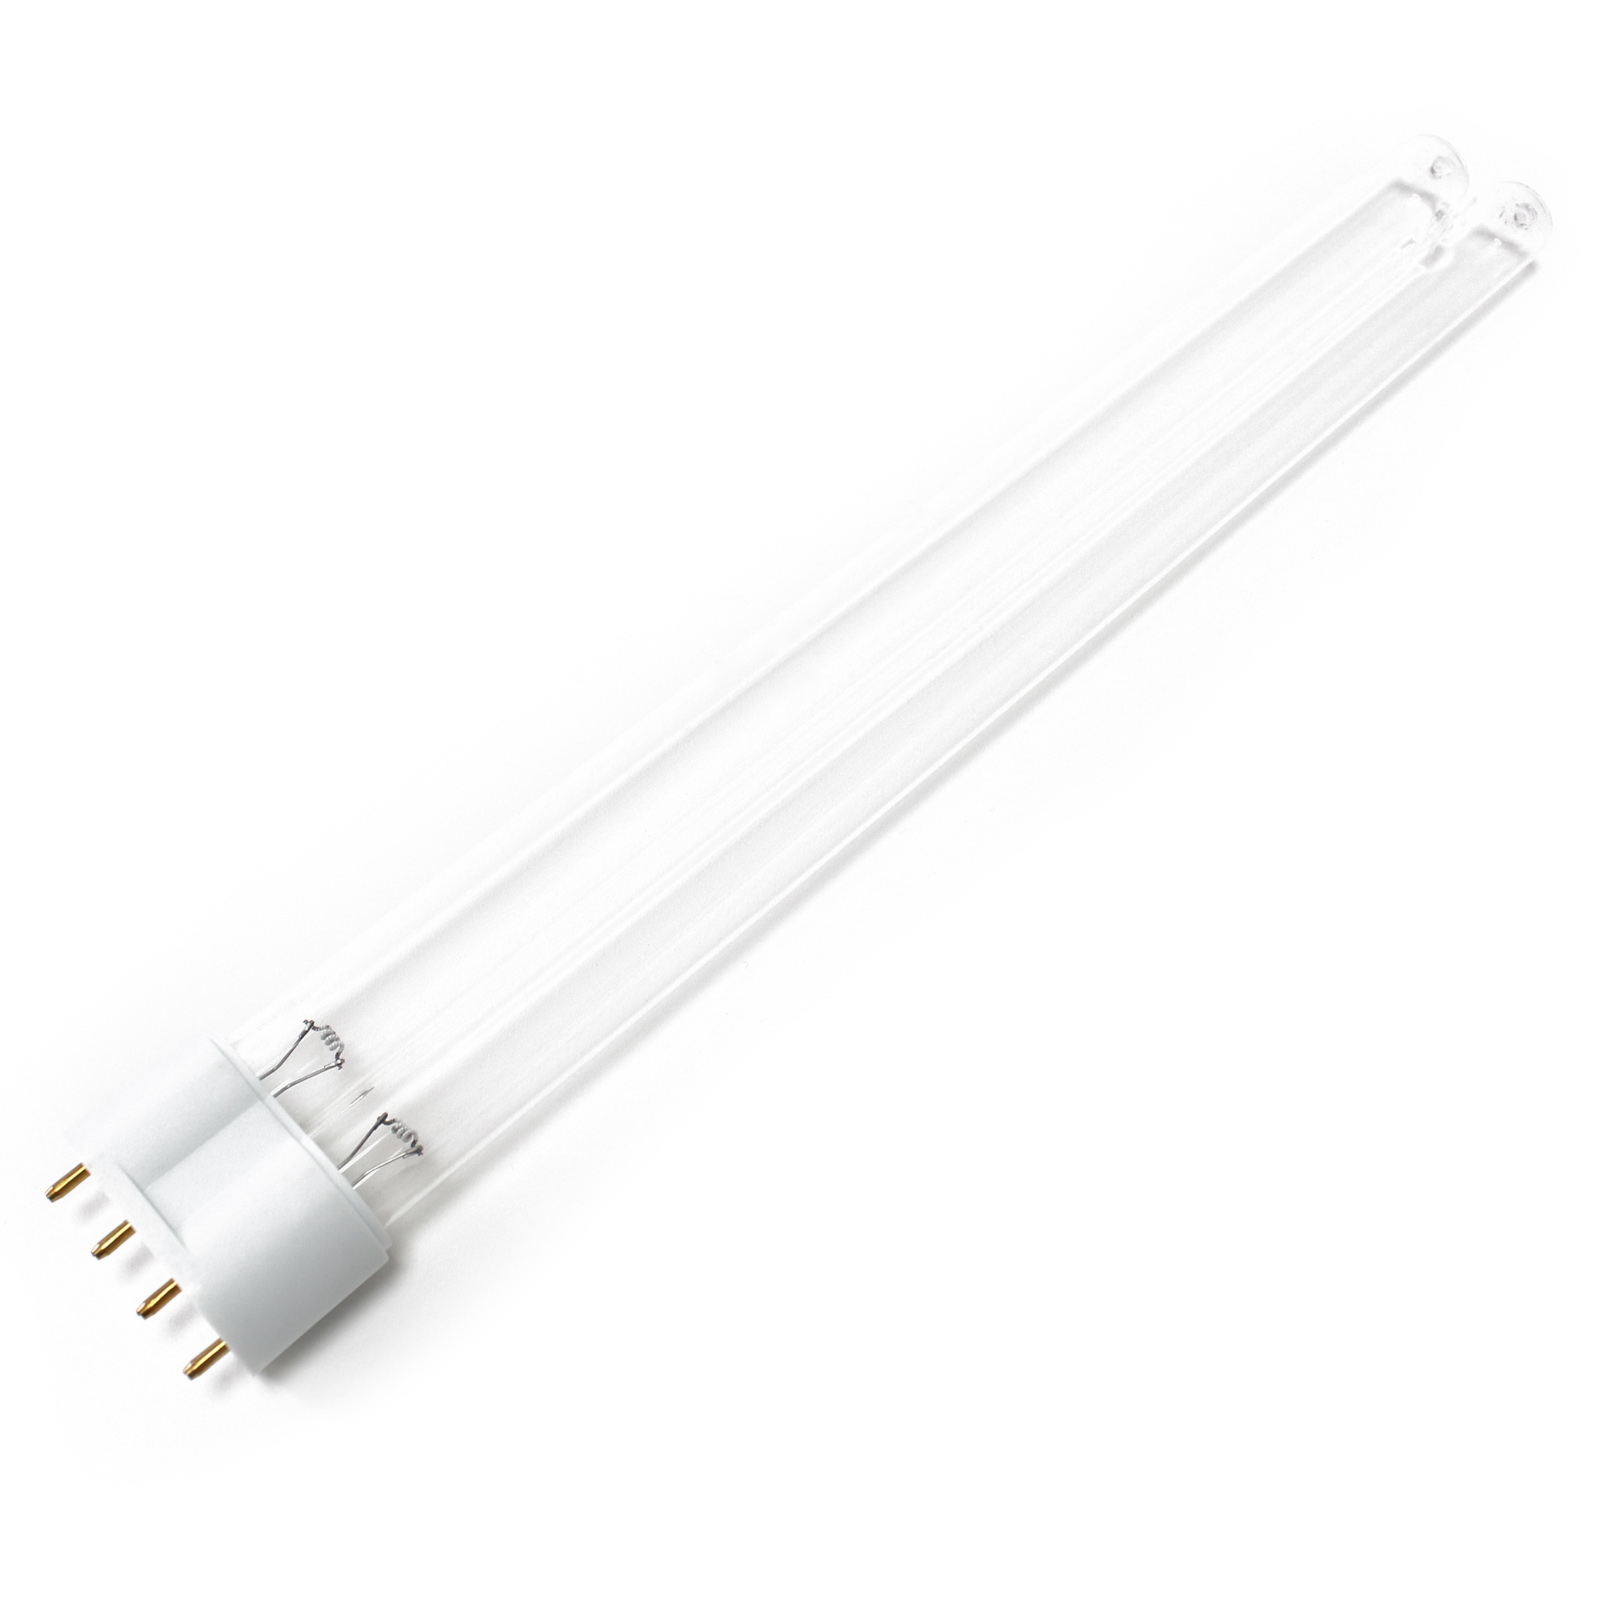 CUV-655 UV-C Lampe Röhre 55W Teich-Klärer UVC Leuchtmittel